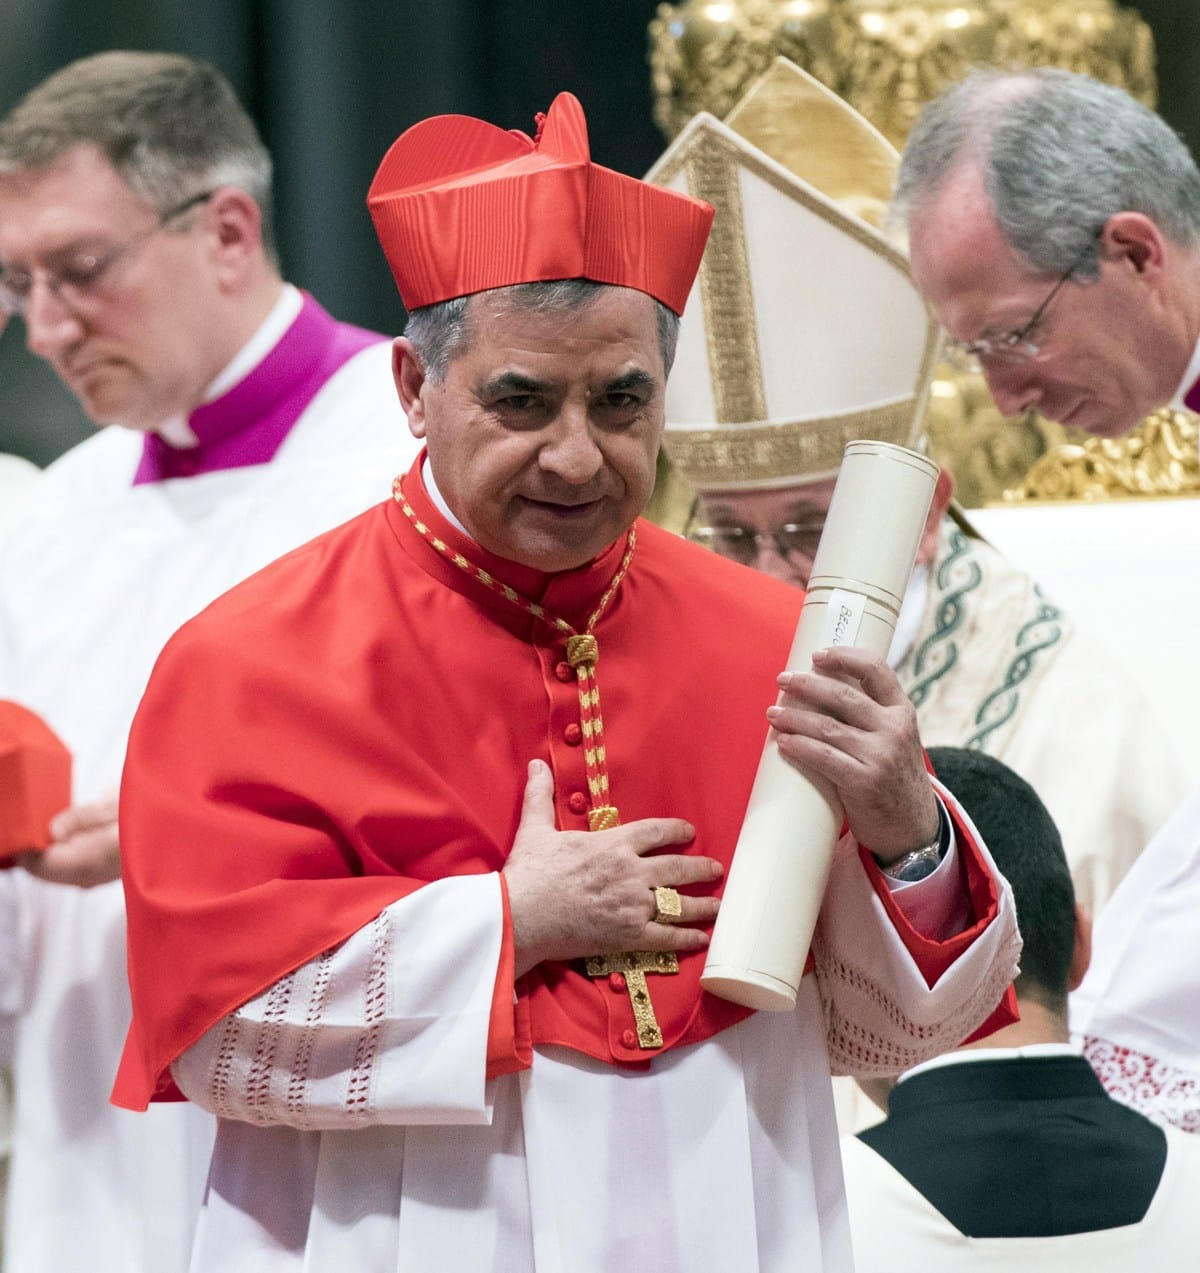 El Vaticano condenó al cardenal Becciu y otras 8 personas por un escándalo financiero